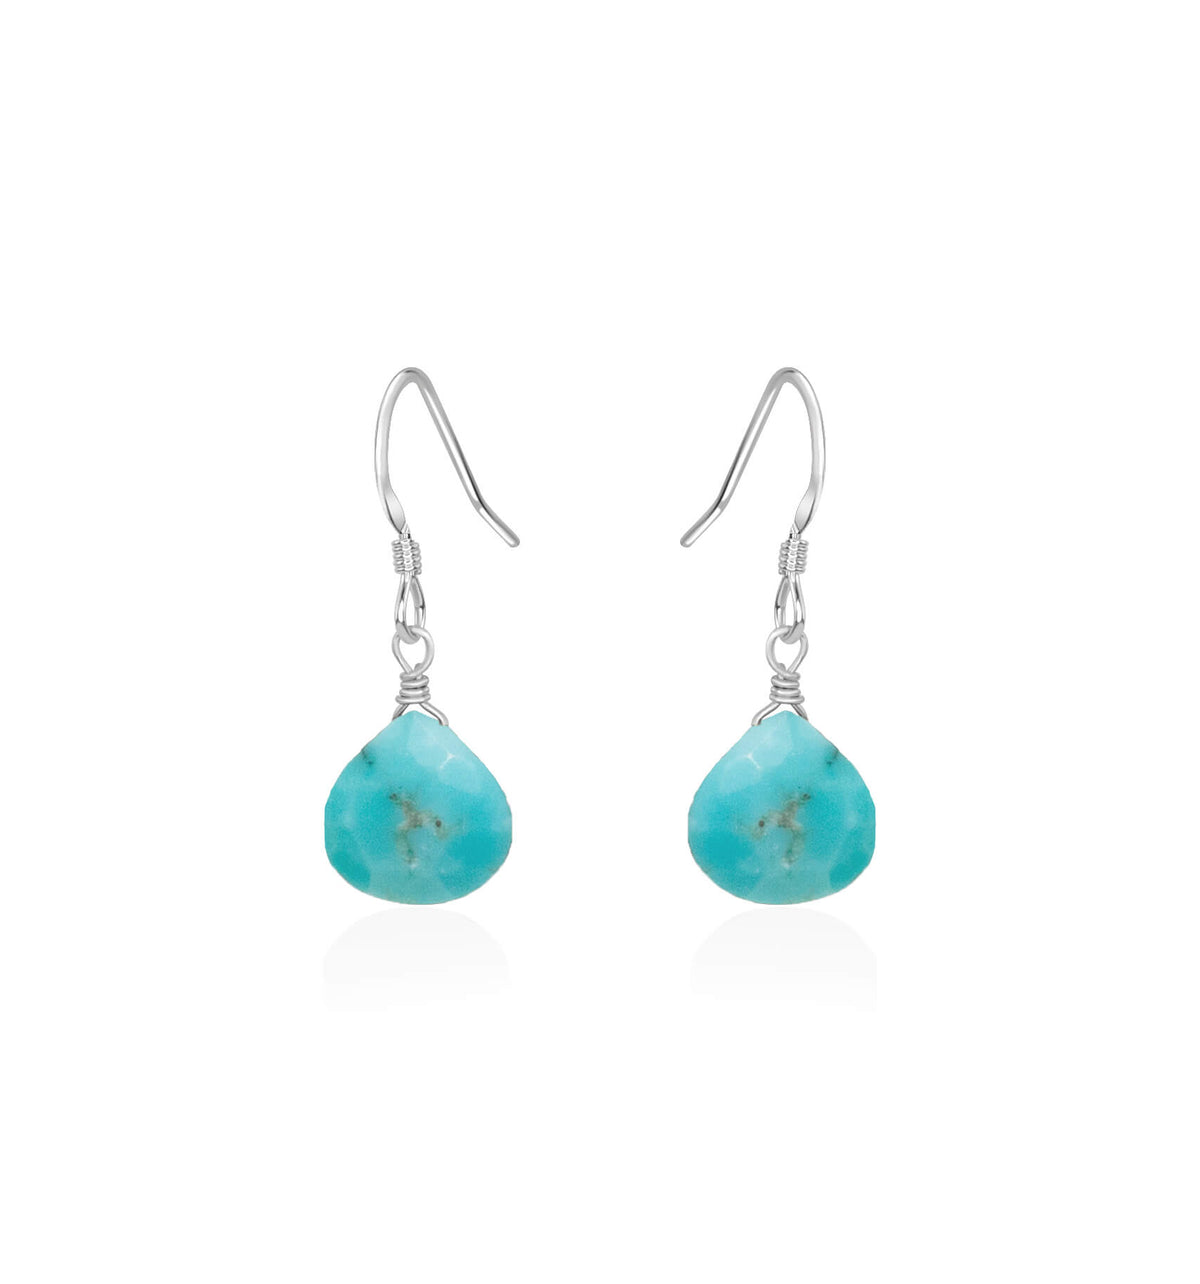 Teardrop Earrings - Turquoise - Sterling Silver - Luna Tide Handmade Jewellery